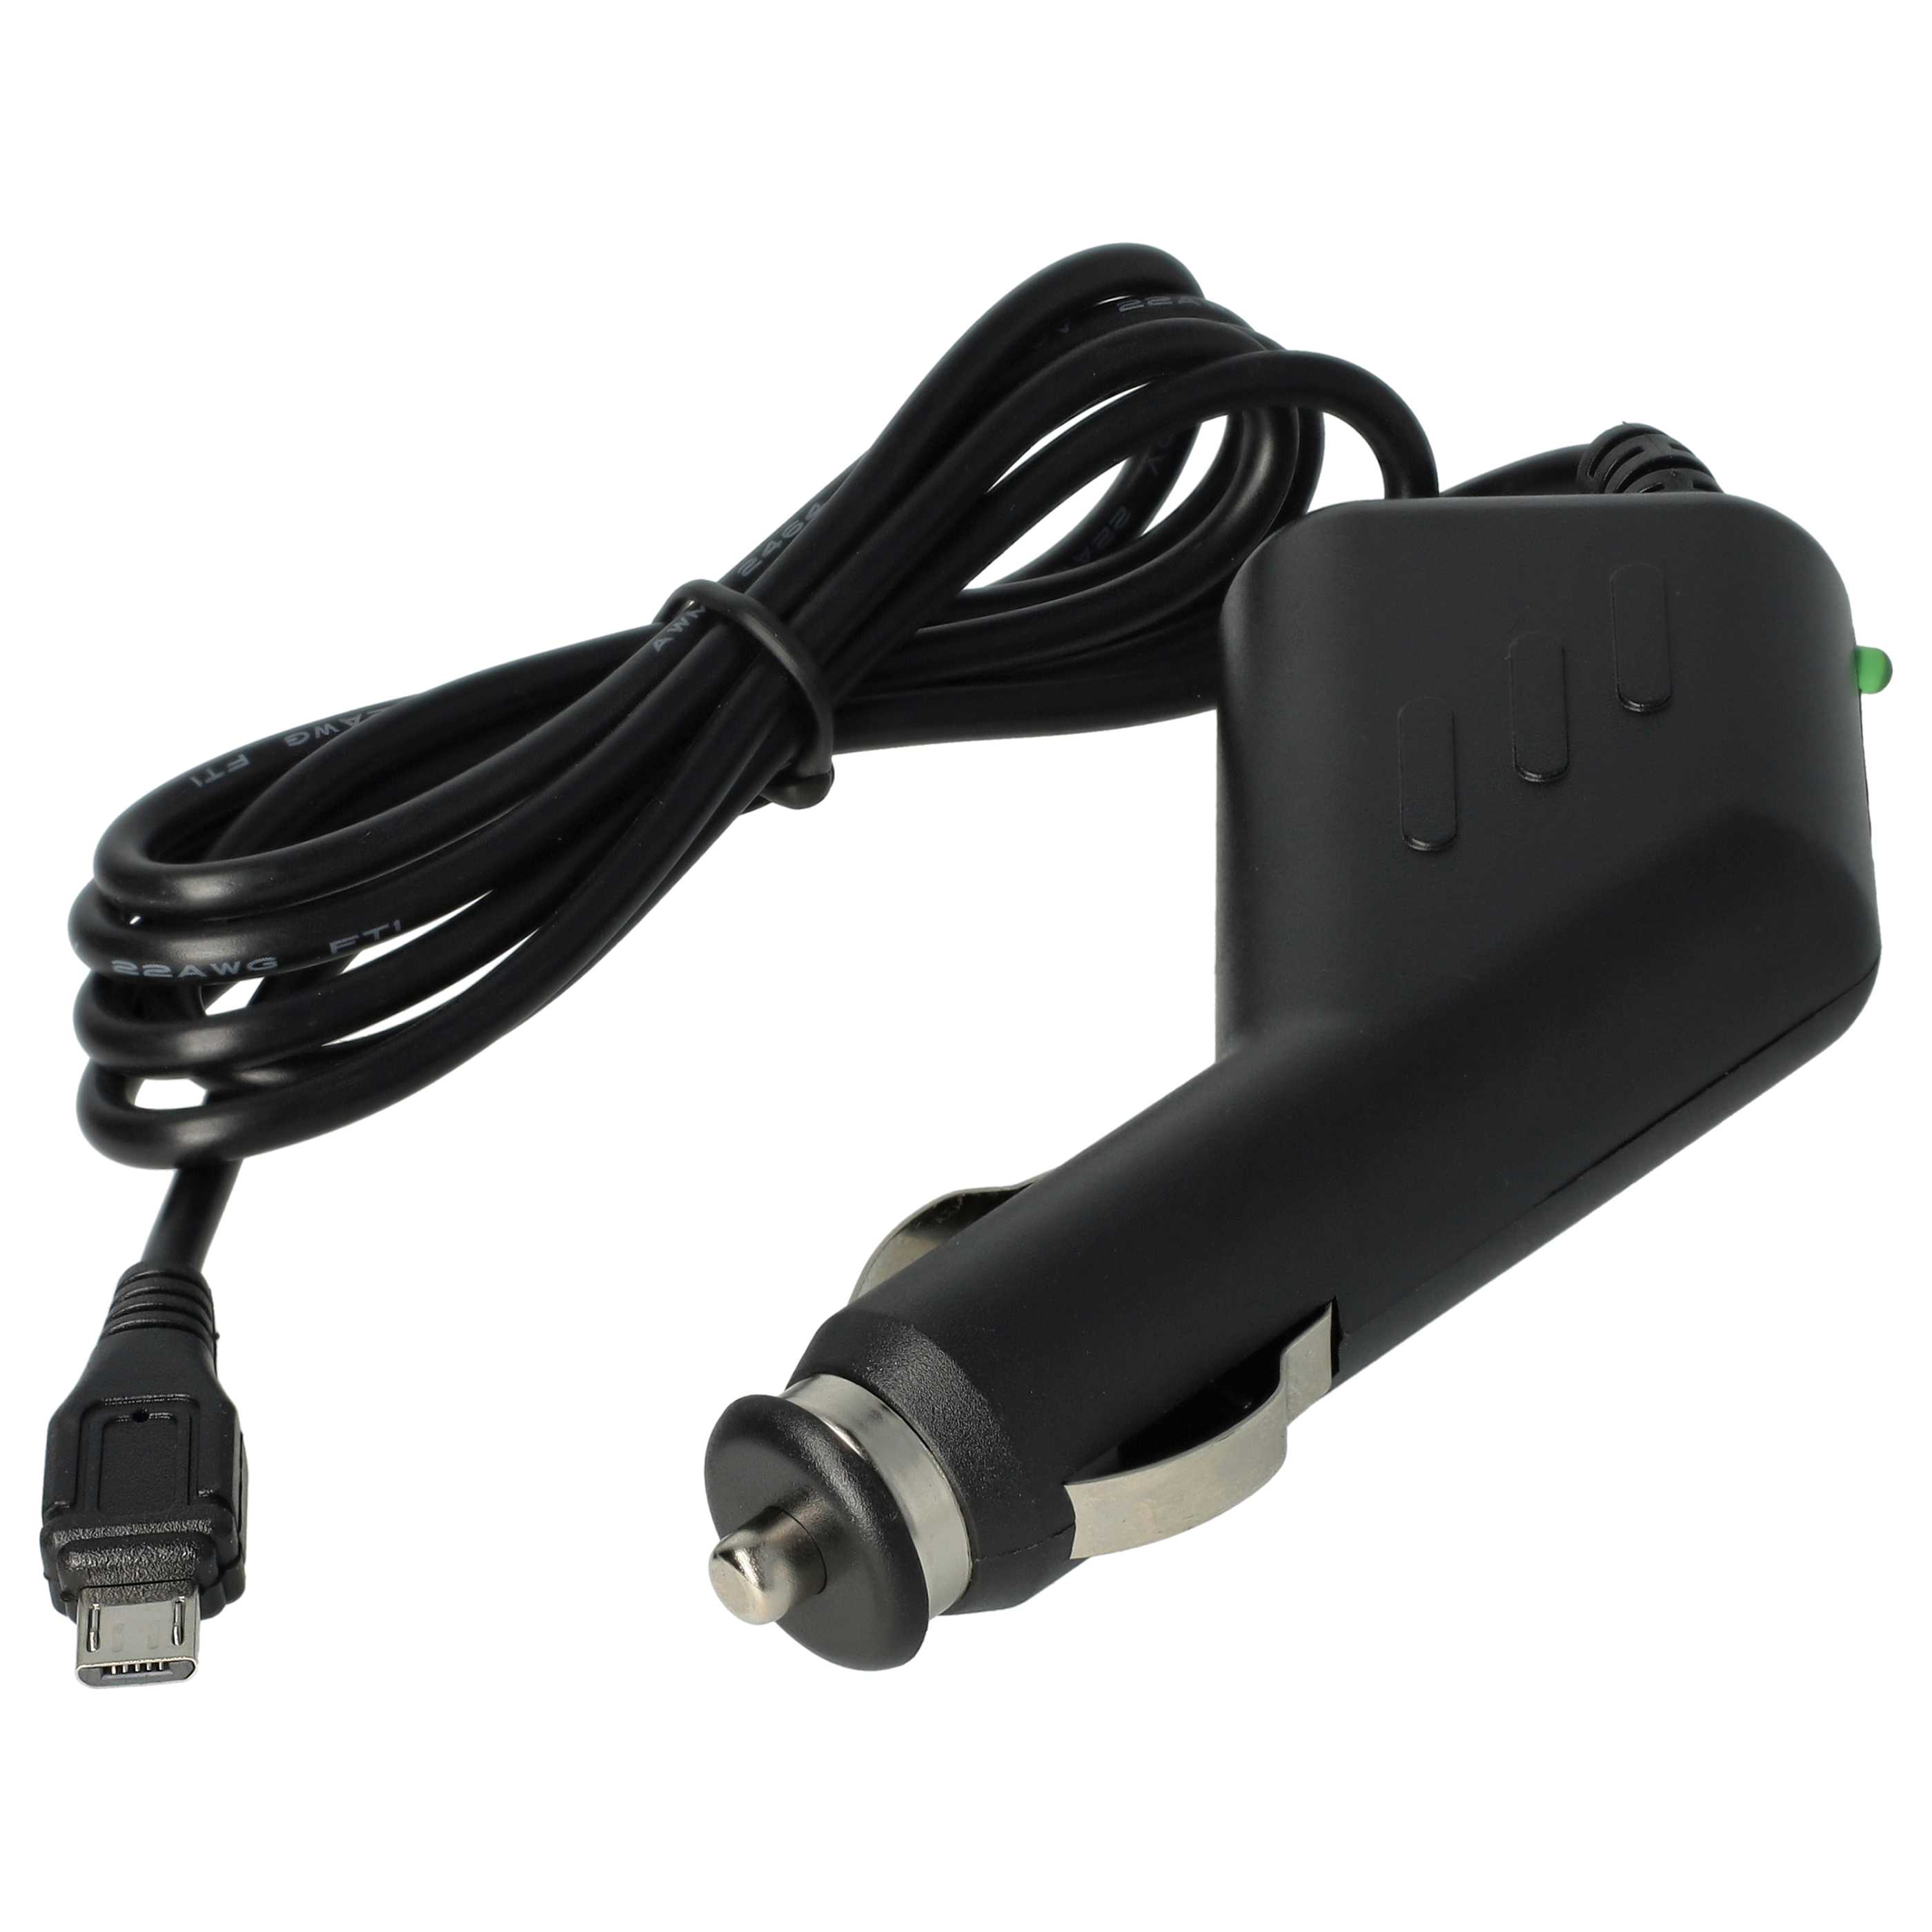 Ładowarka samochodowa Micro USB do urządzeń np. smartfona, nawigacji GPS C150 Bea-fon - 2,0 A